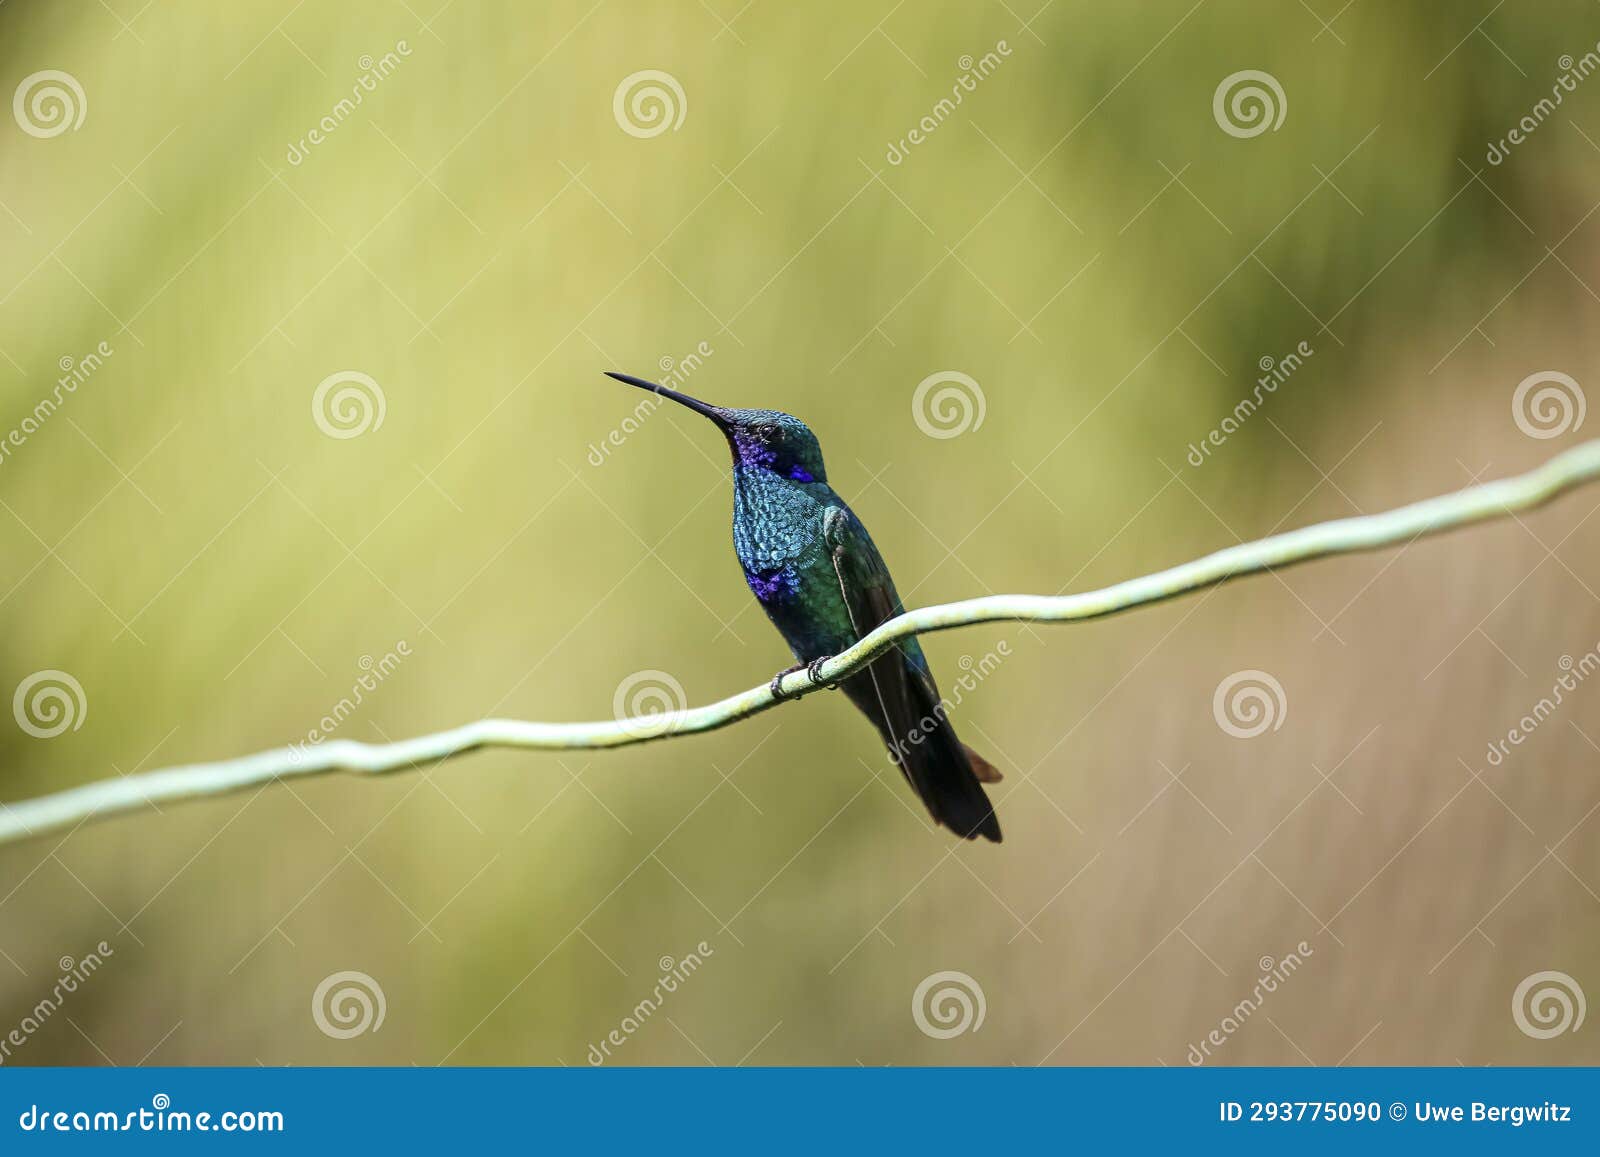 sparkling violetear hummingbird (colibri coruscans), rogitama biodiversidad, colombia